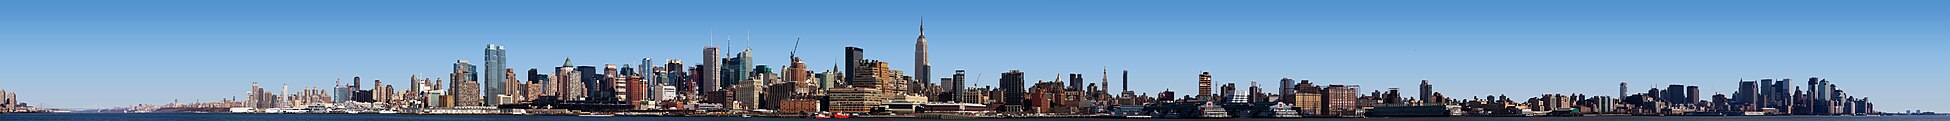 Panorama sur la ville de New York, pris depuis Hoboken, dans le New Jersey (États-Unis).